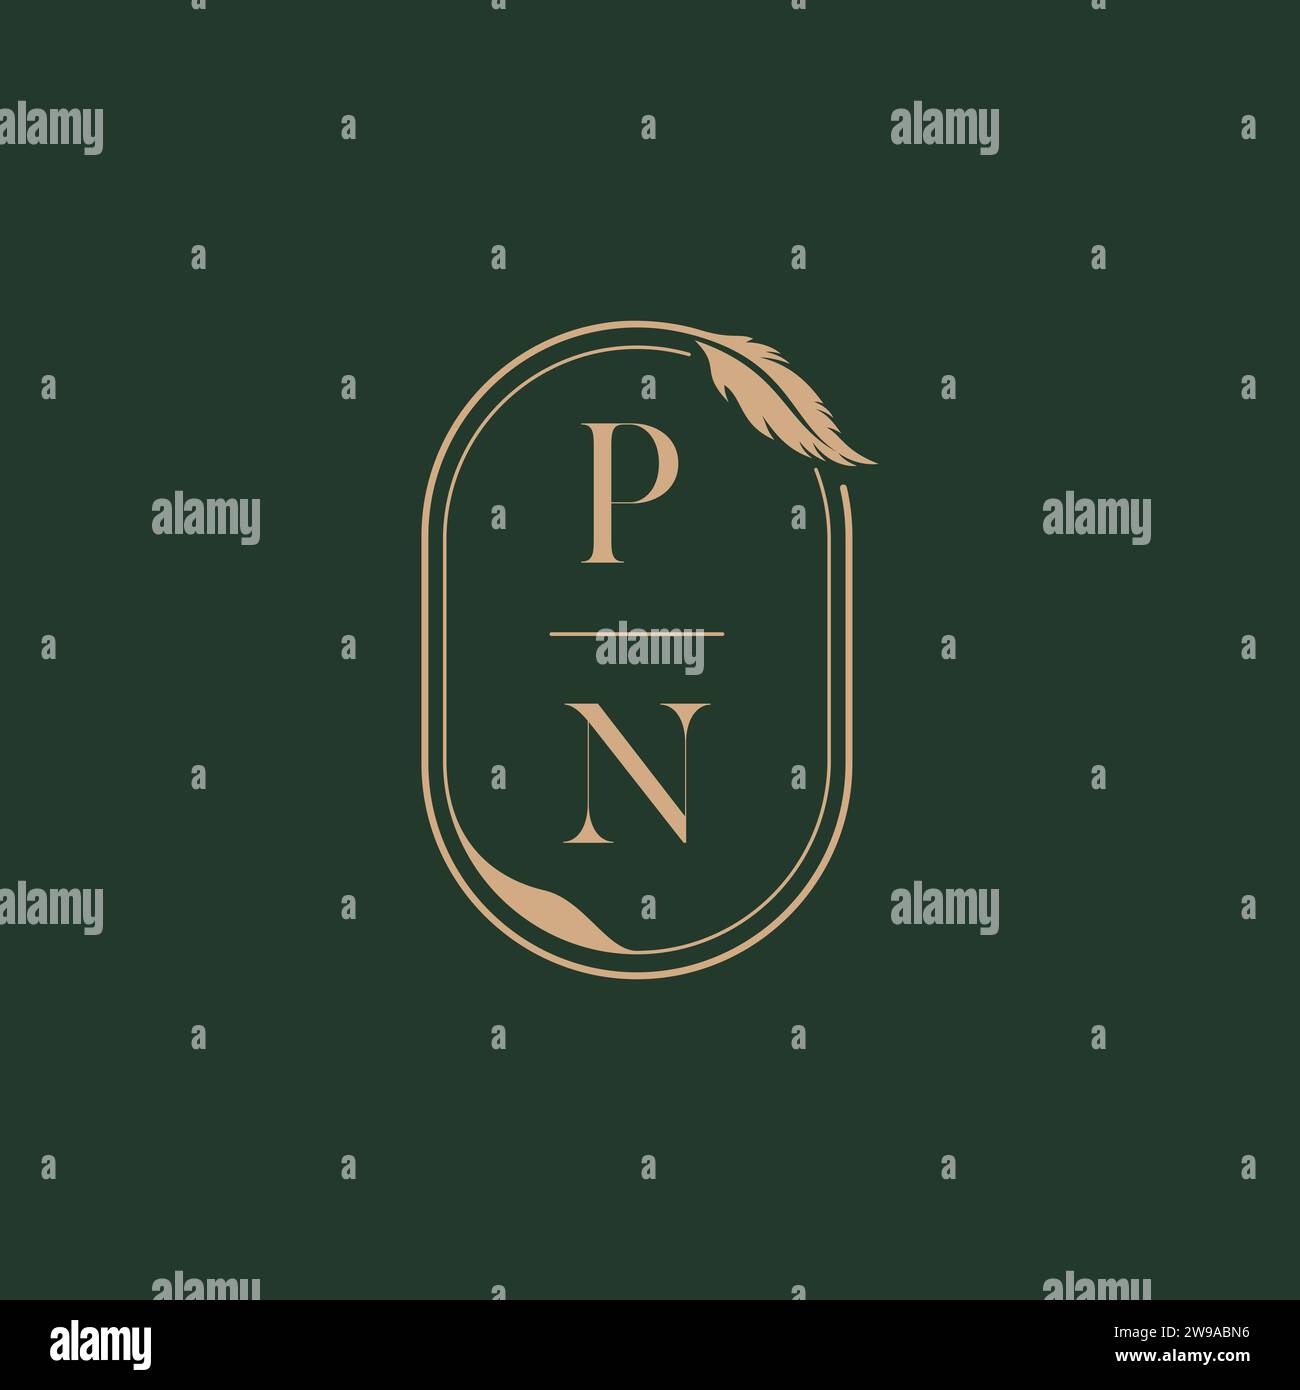 PN feather concept wedding monogram logo design ideas as inspiration Stock Vector